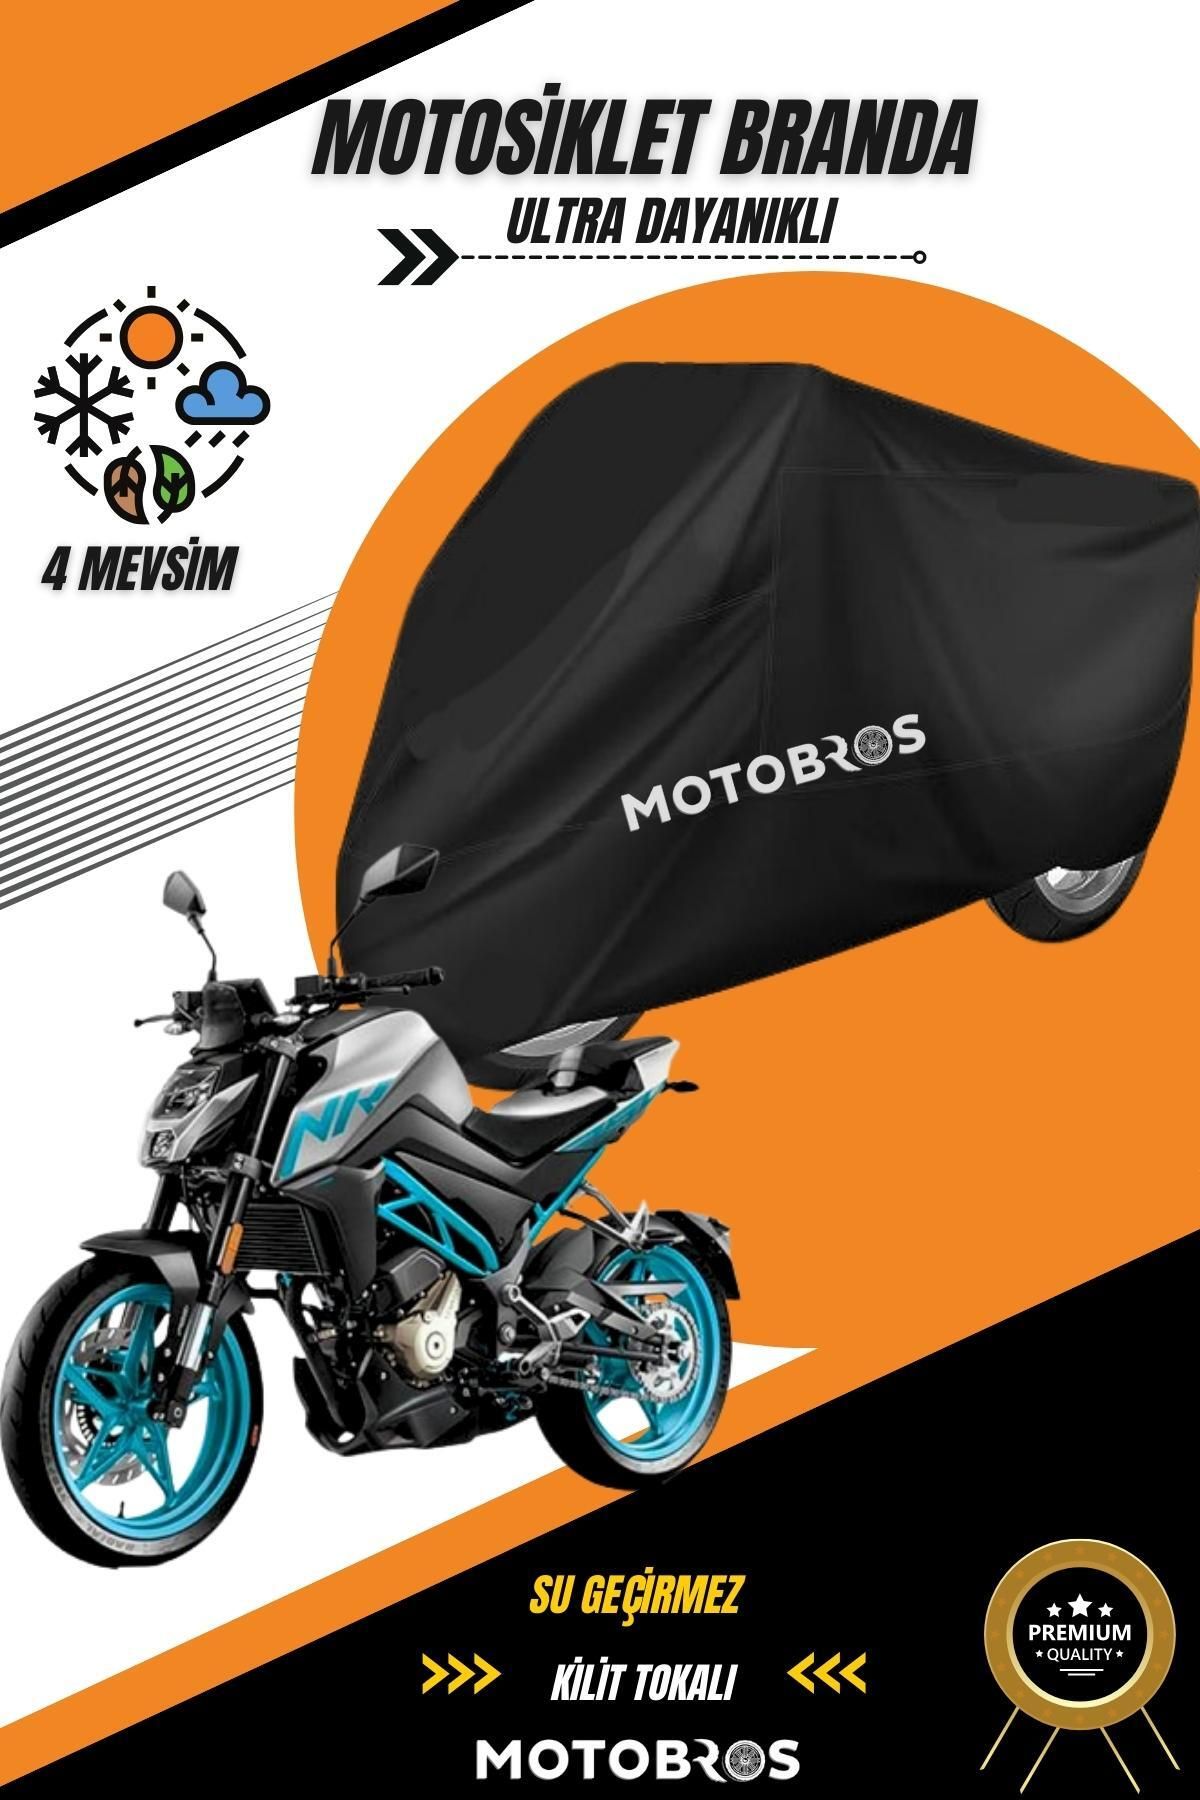 Motobros Cf Moto 250 Nk Siyah Su Geçirmez Dayanıklı Motosiklet Brandası (EN KALIN) Kumaş Ömürlük Kullanım